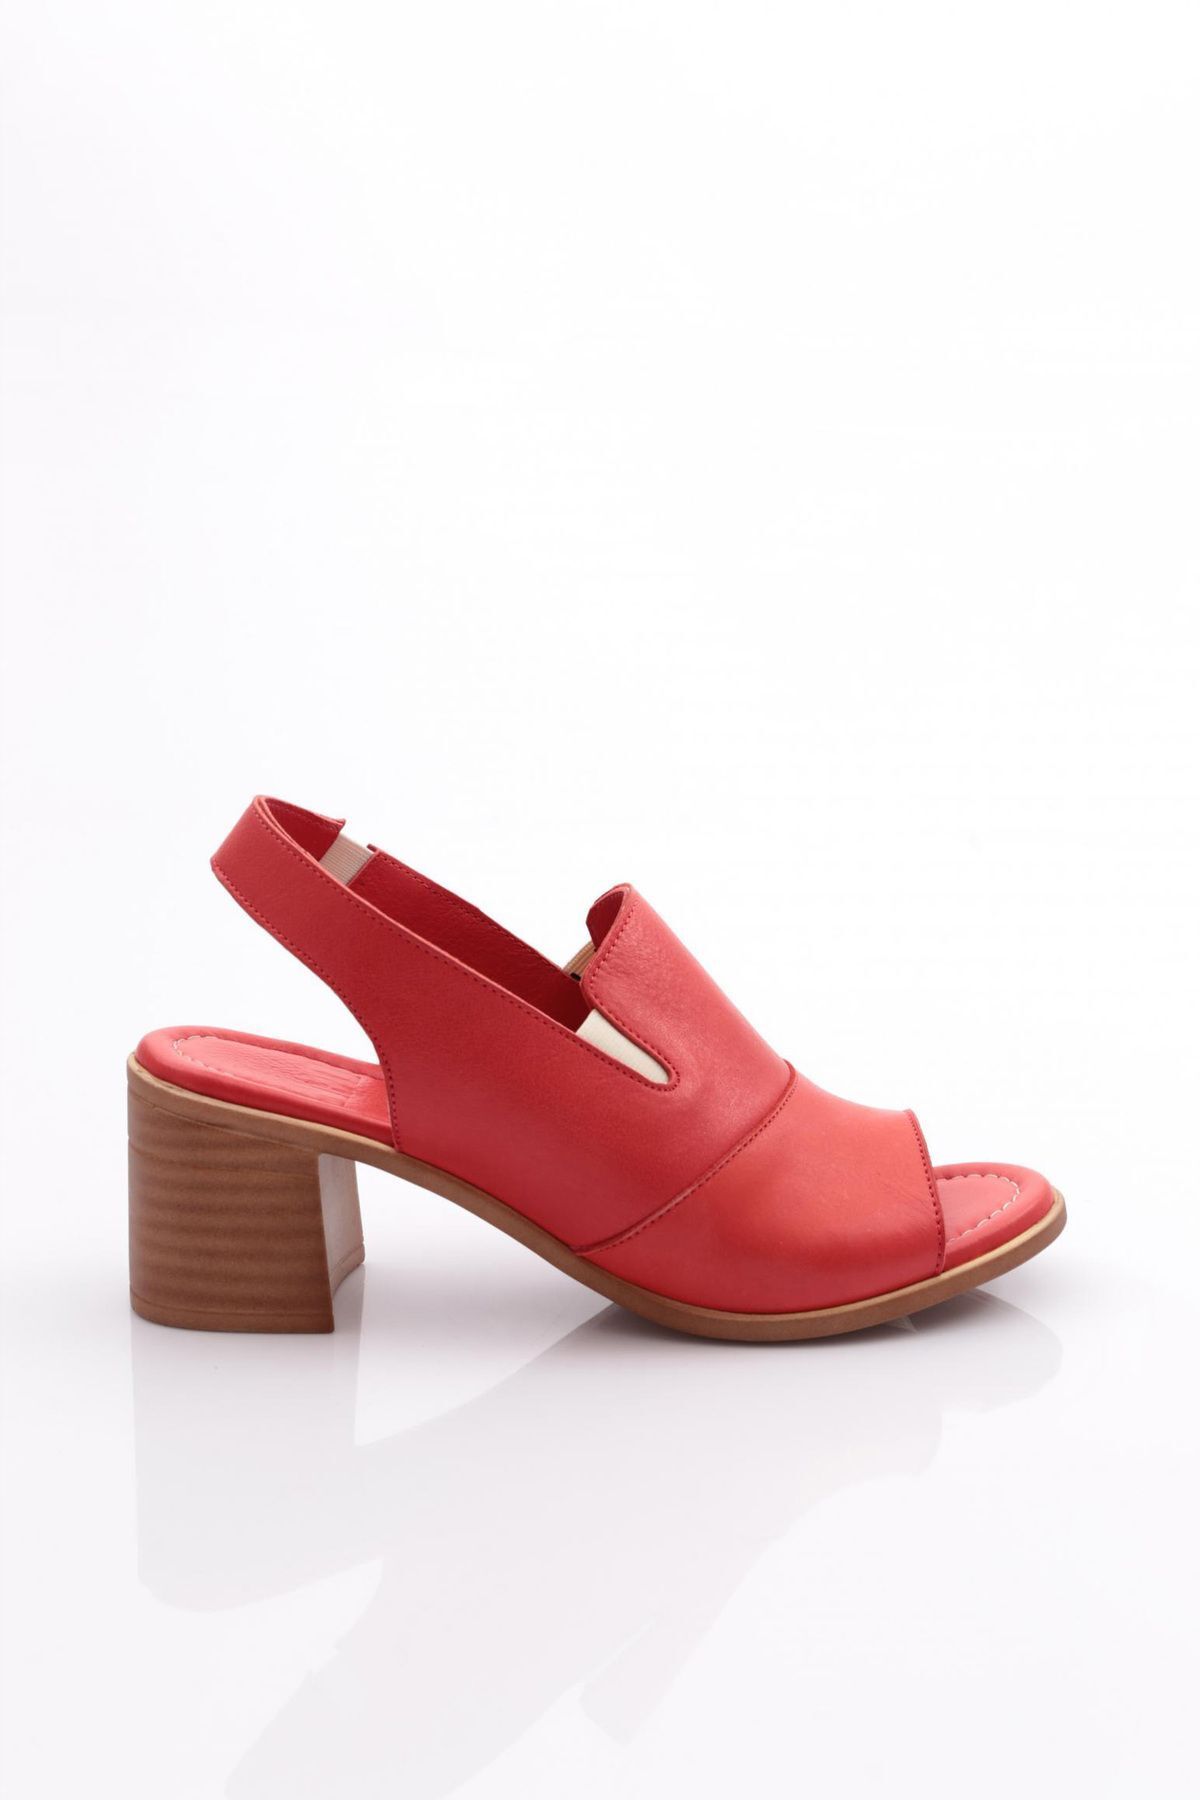 Dgn 1825 Kadın Sandalet Kırmızı